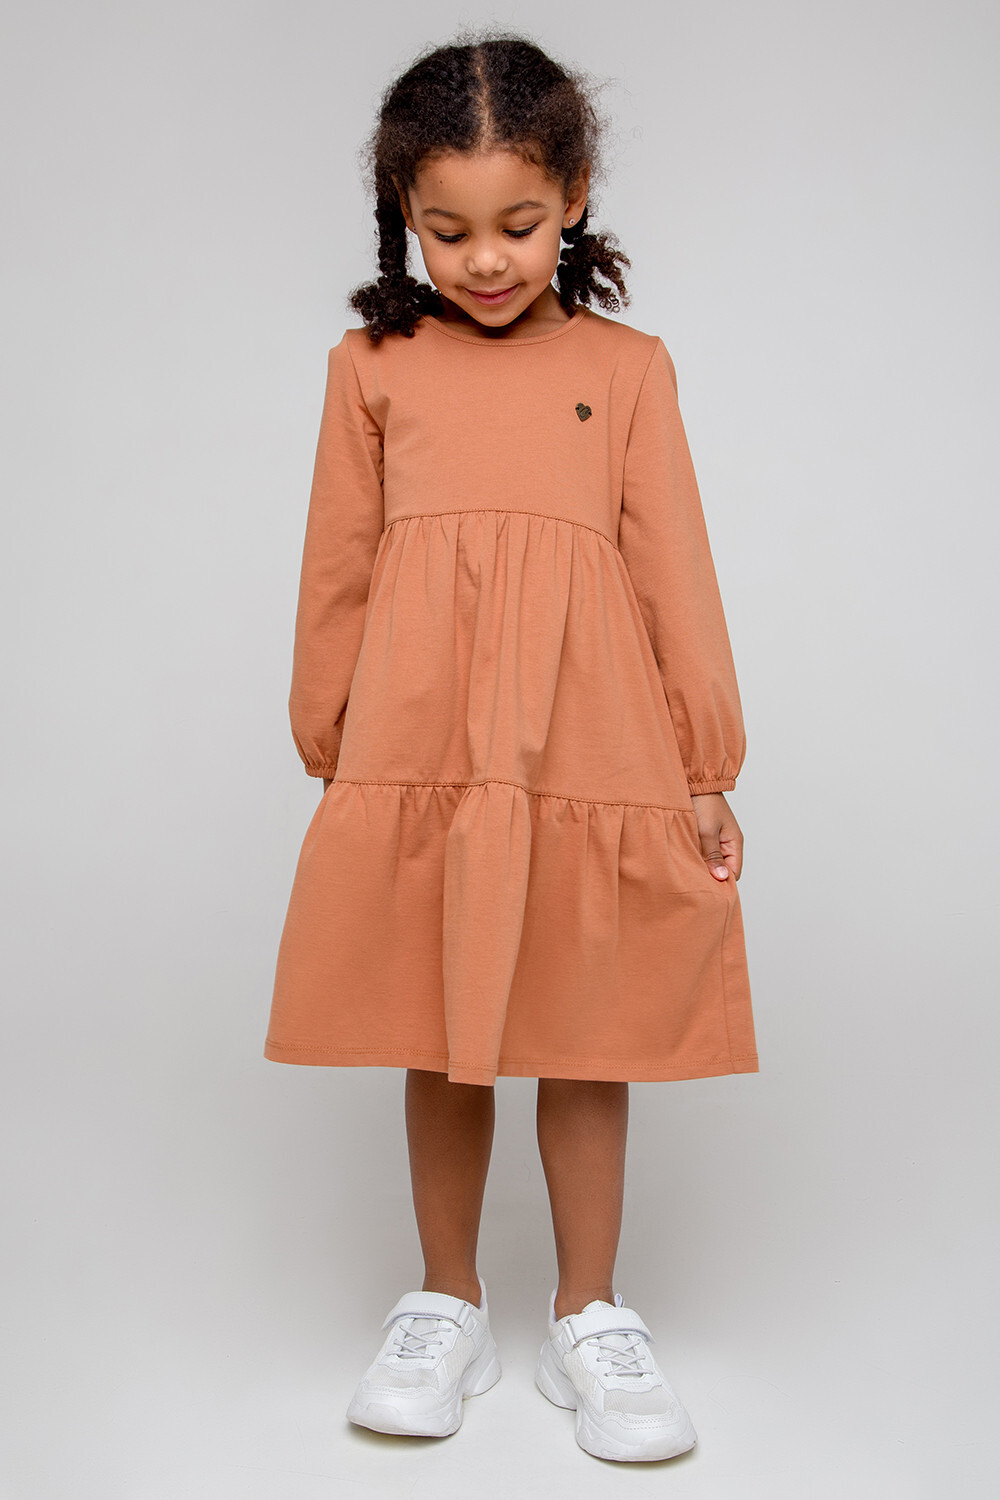 КР 5780/светло-коричневый к357 платье для девочки